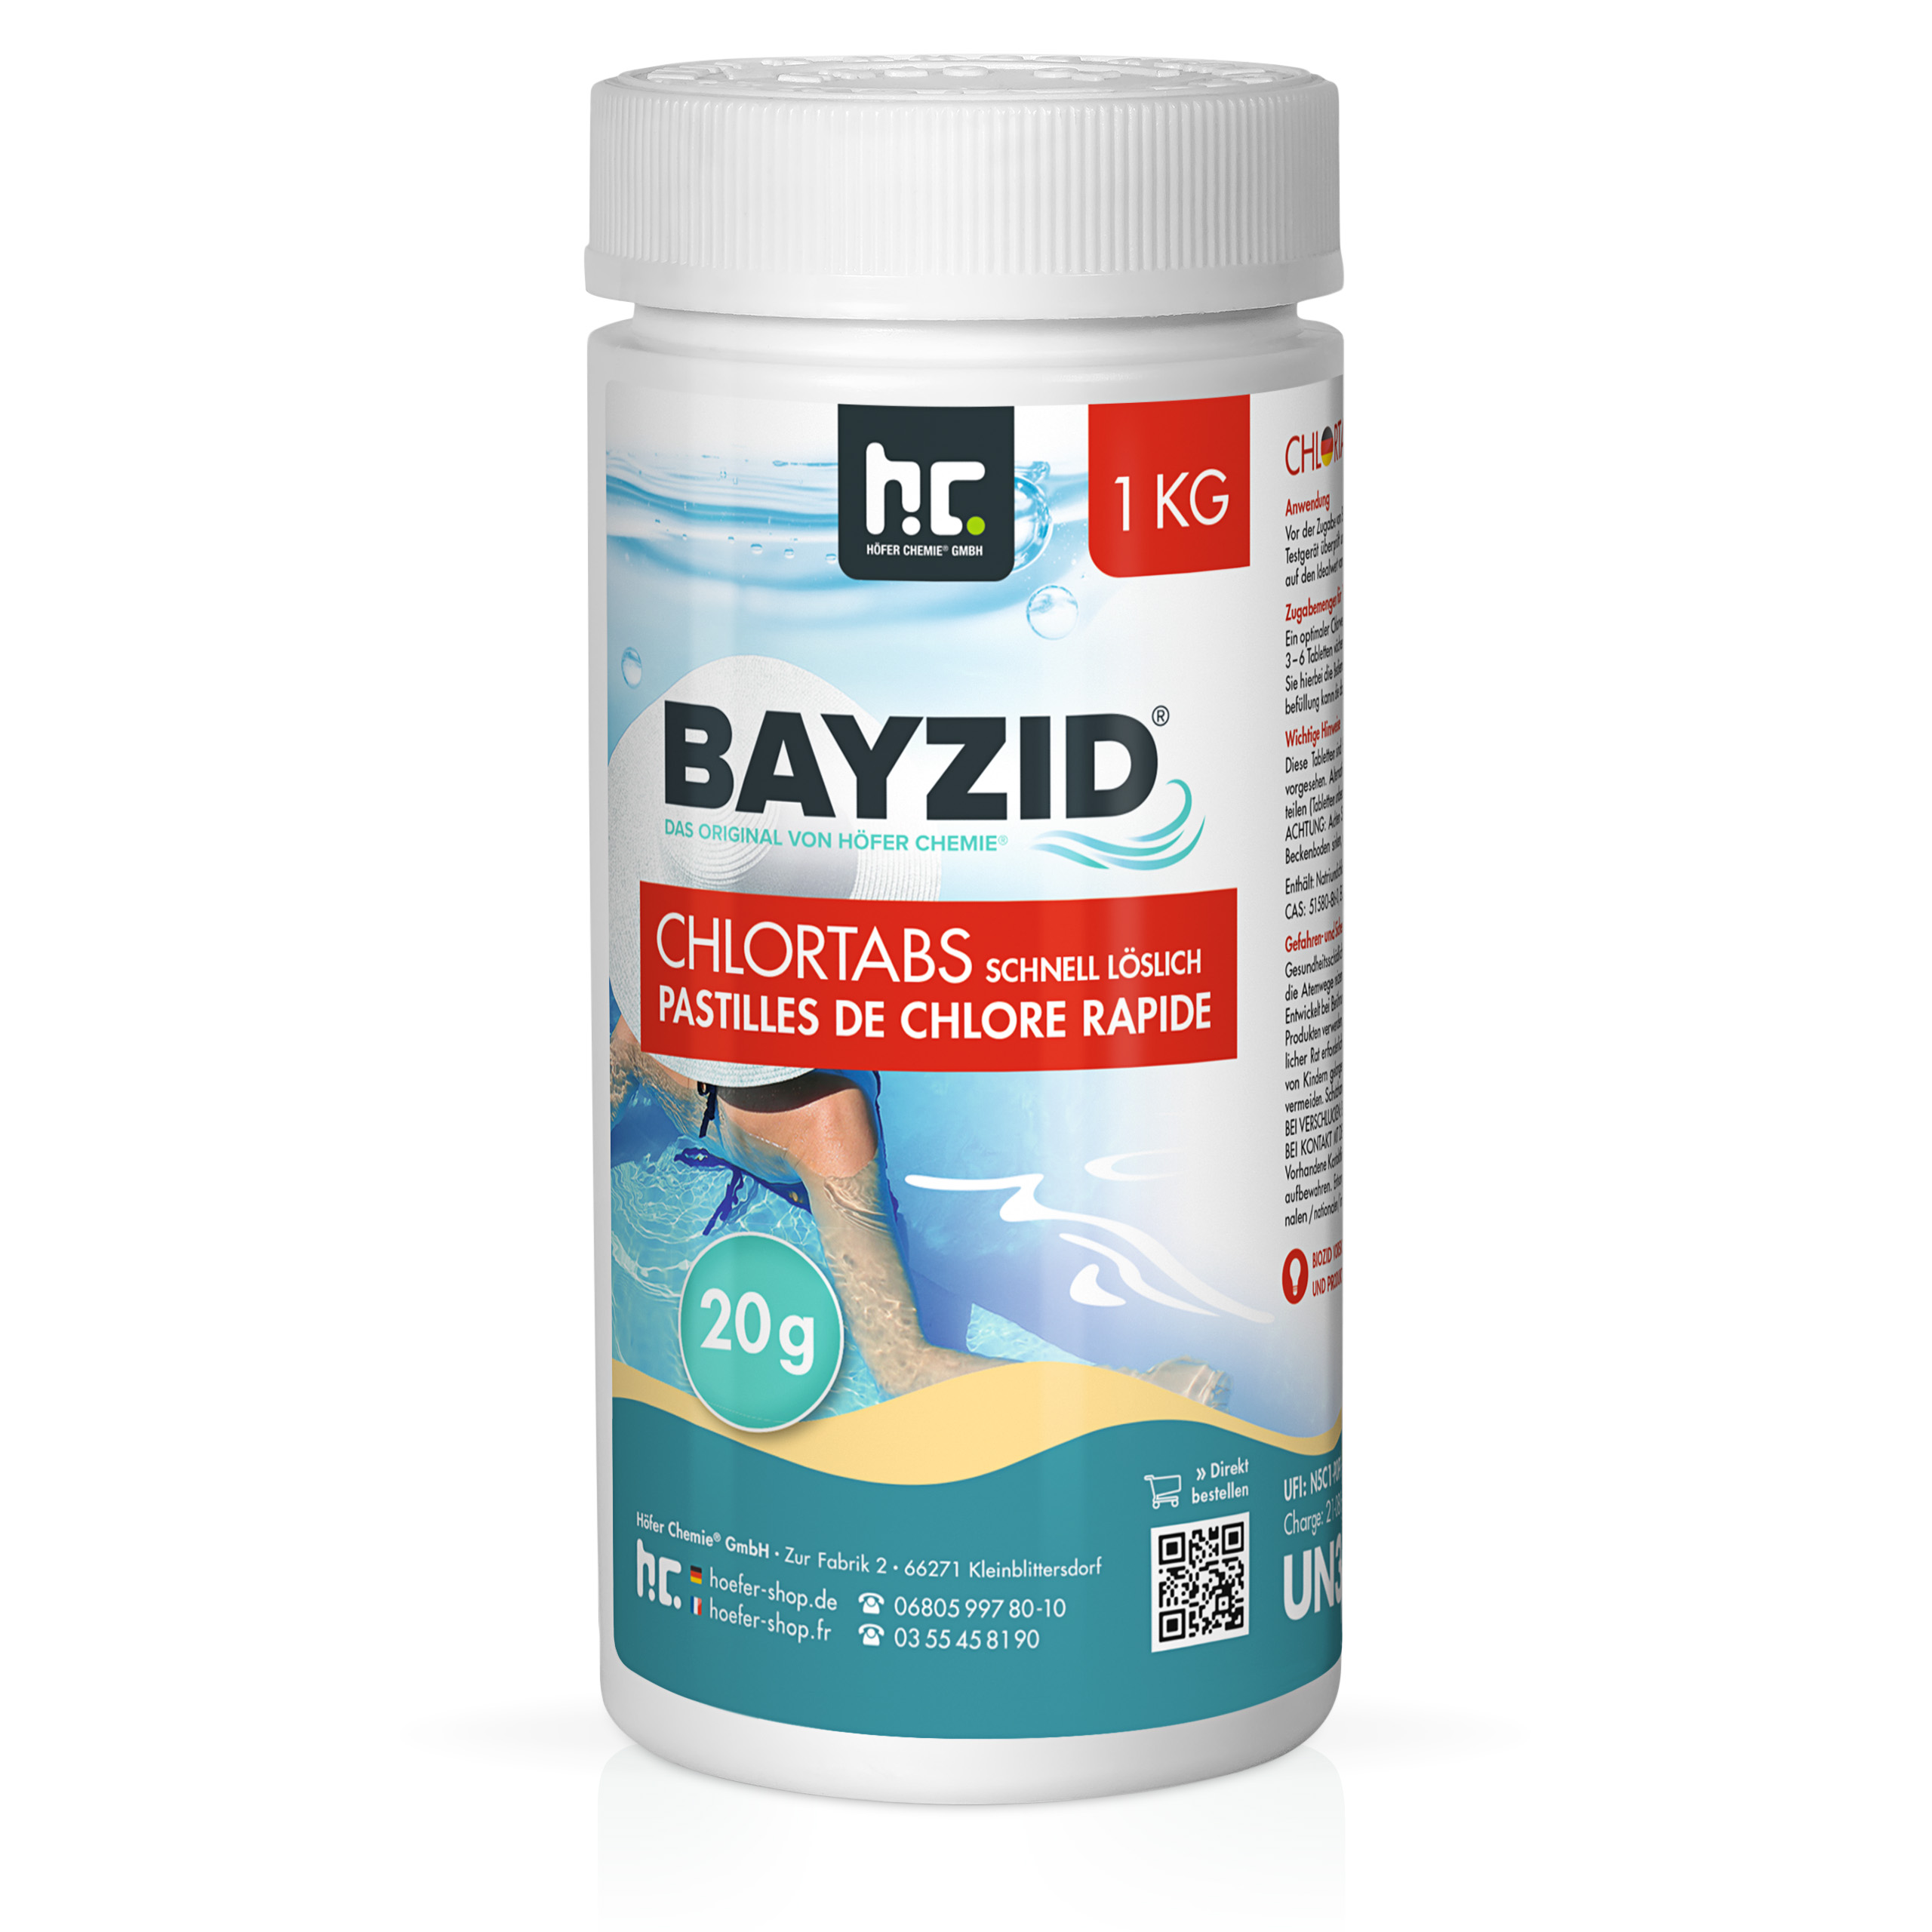 1 kg BAYZID® Chlortabs 20g schnell löslich